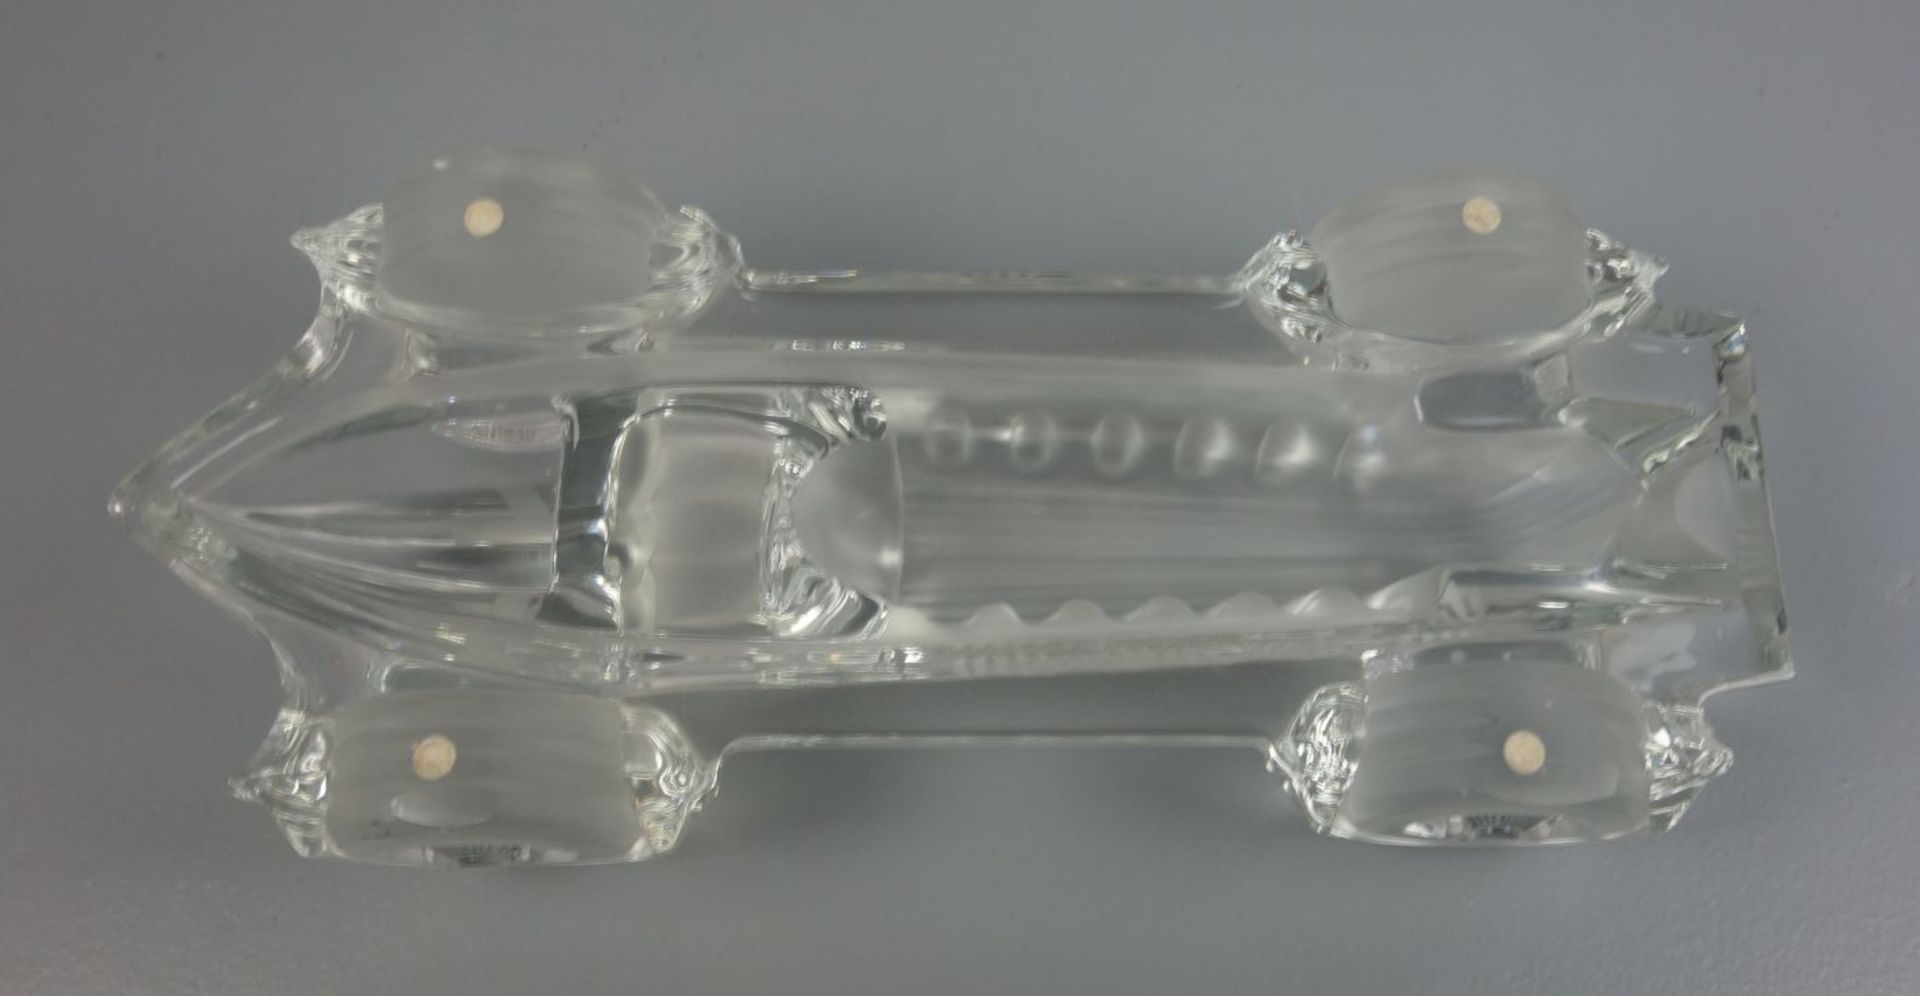 GLAS - ZIEROBJEKT "RENNWAGEN", Cristallerie Daum (ungemarkt) 1970er / 1980erJahre. Vollplastische - Bild 4 aus 5